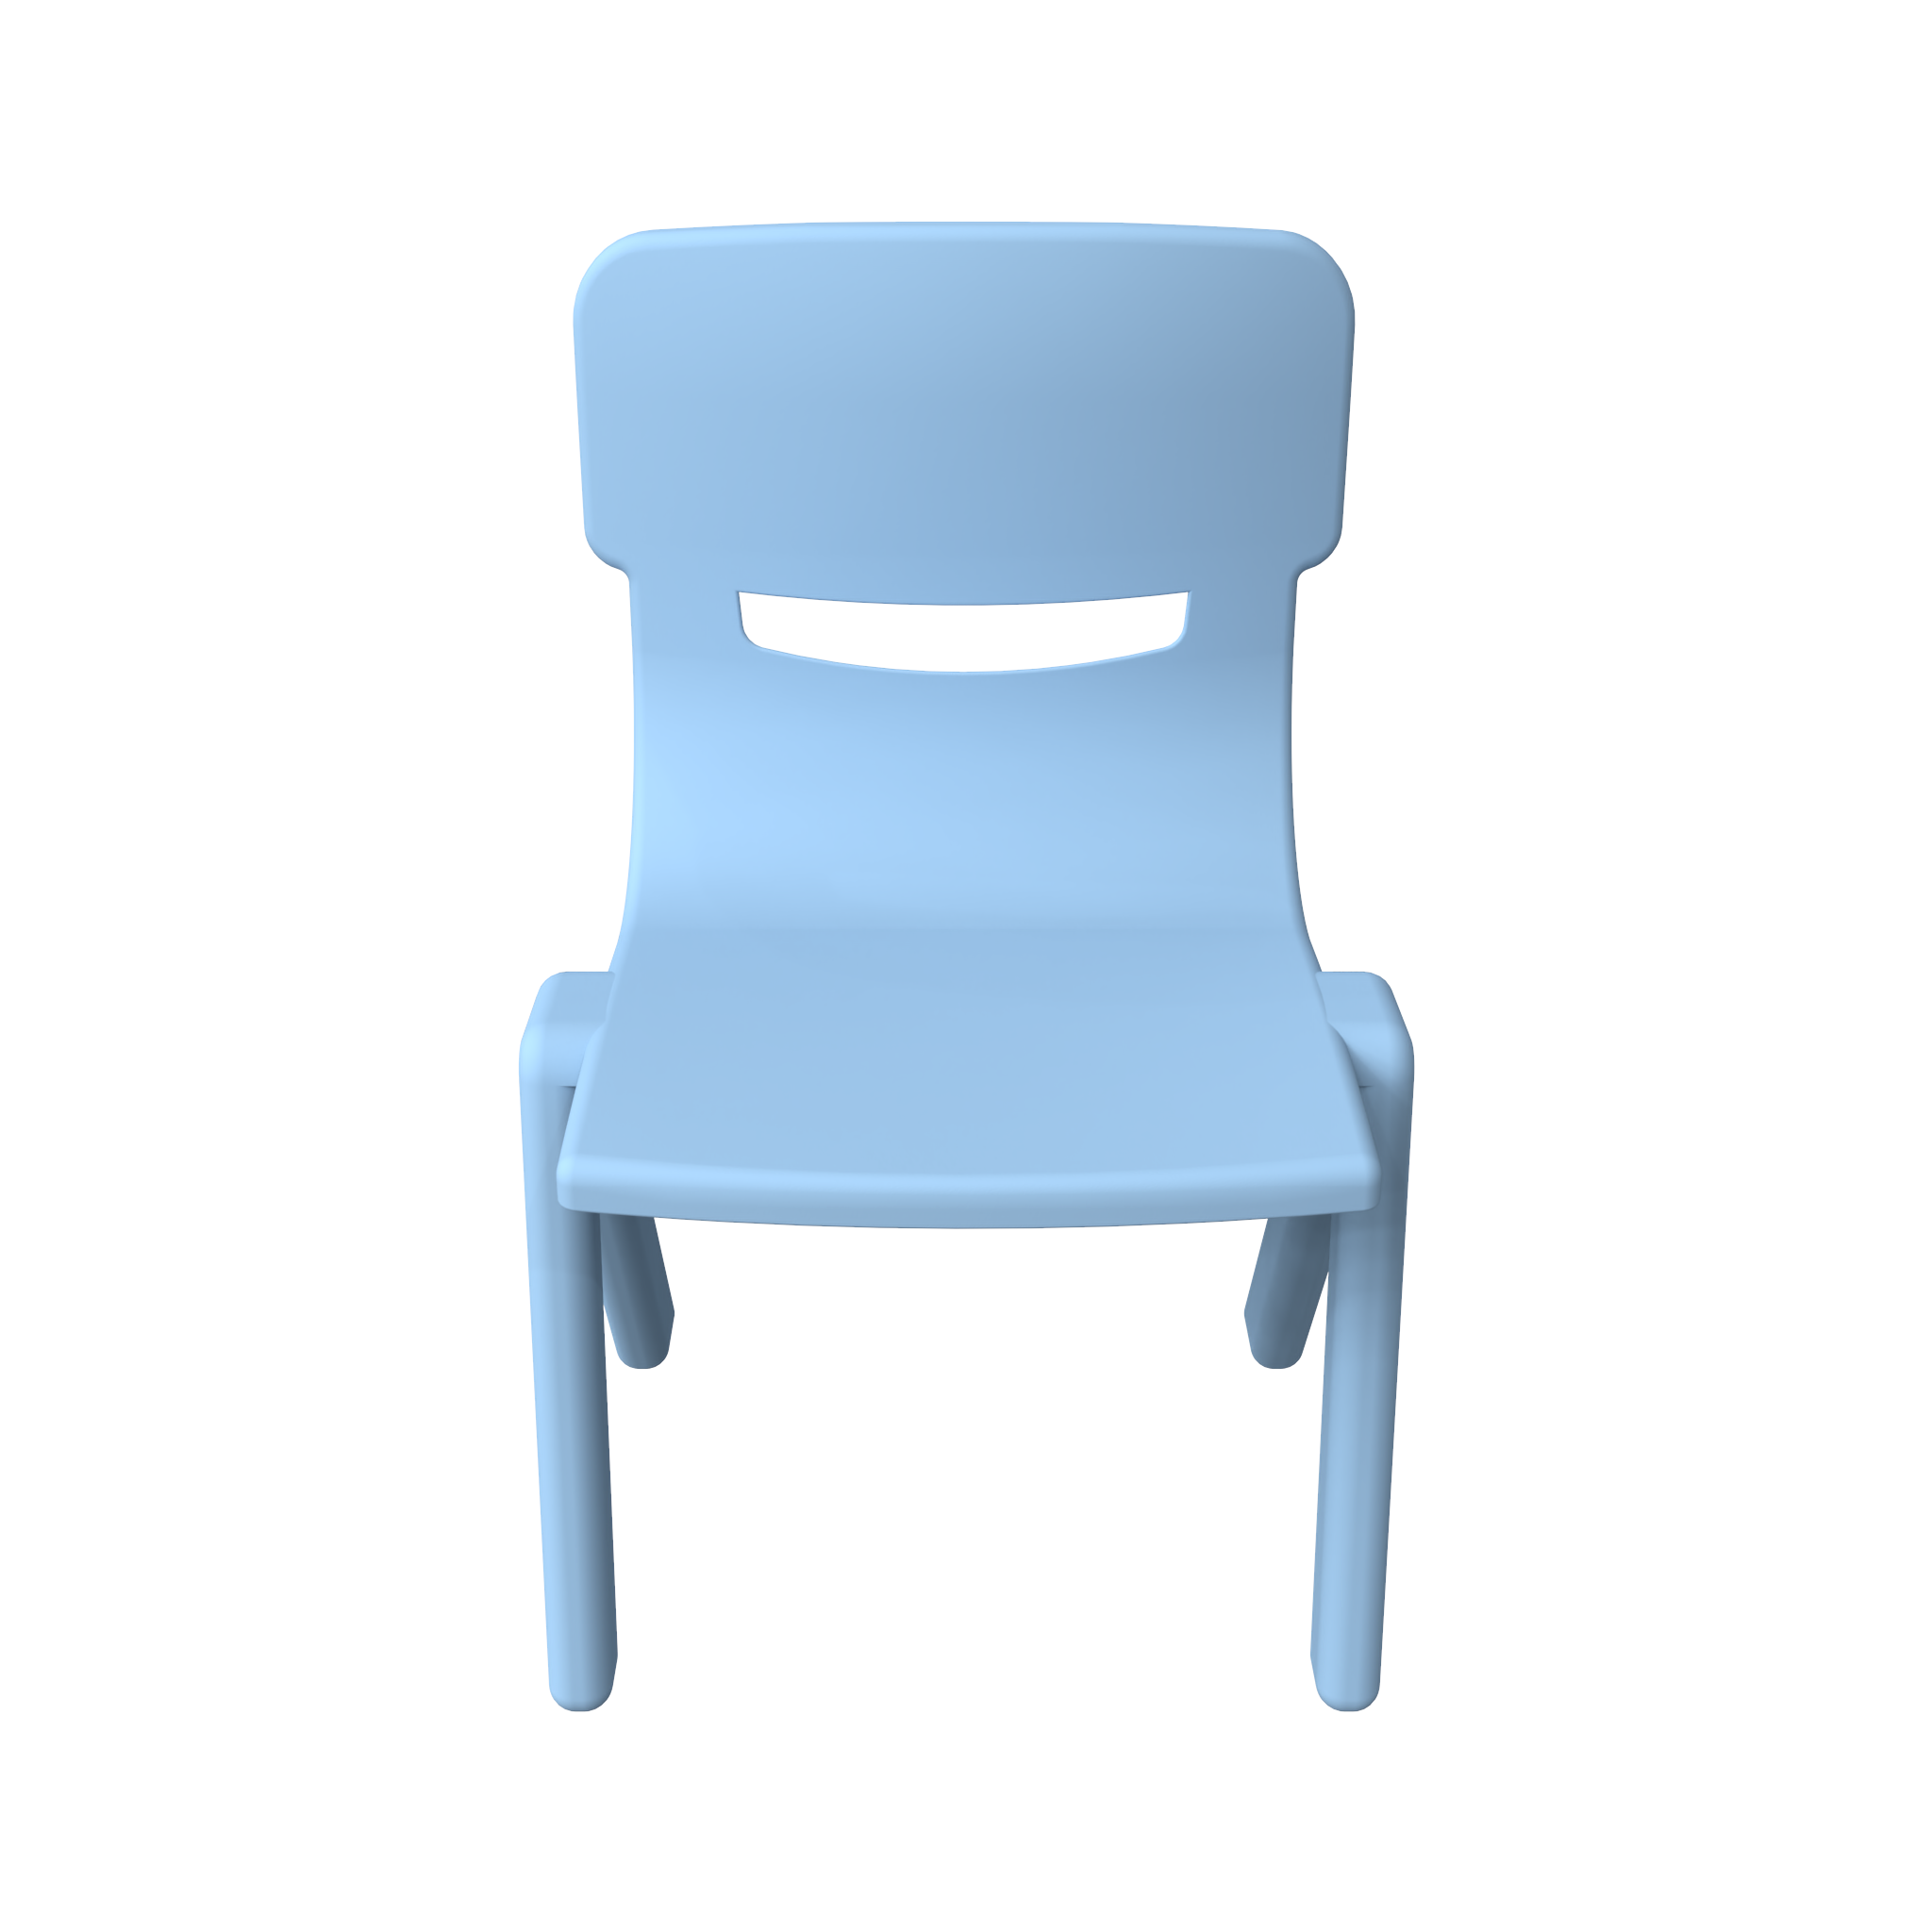 Gehuurd langzaam Kader Kinderstoel Fun chair blauw | IKC kinderstoelen